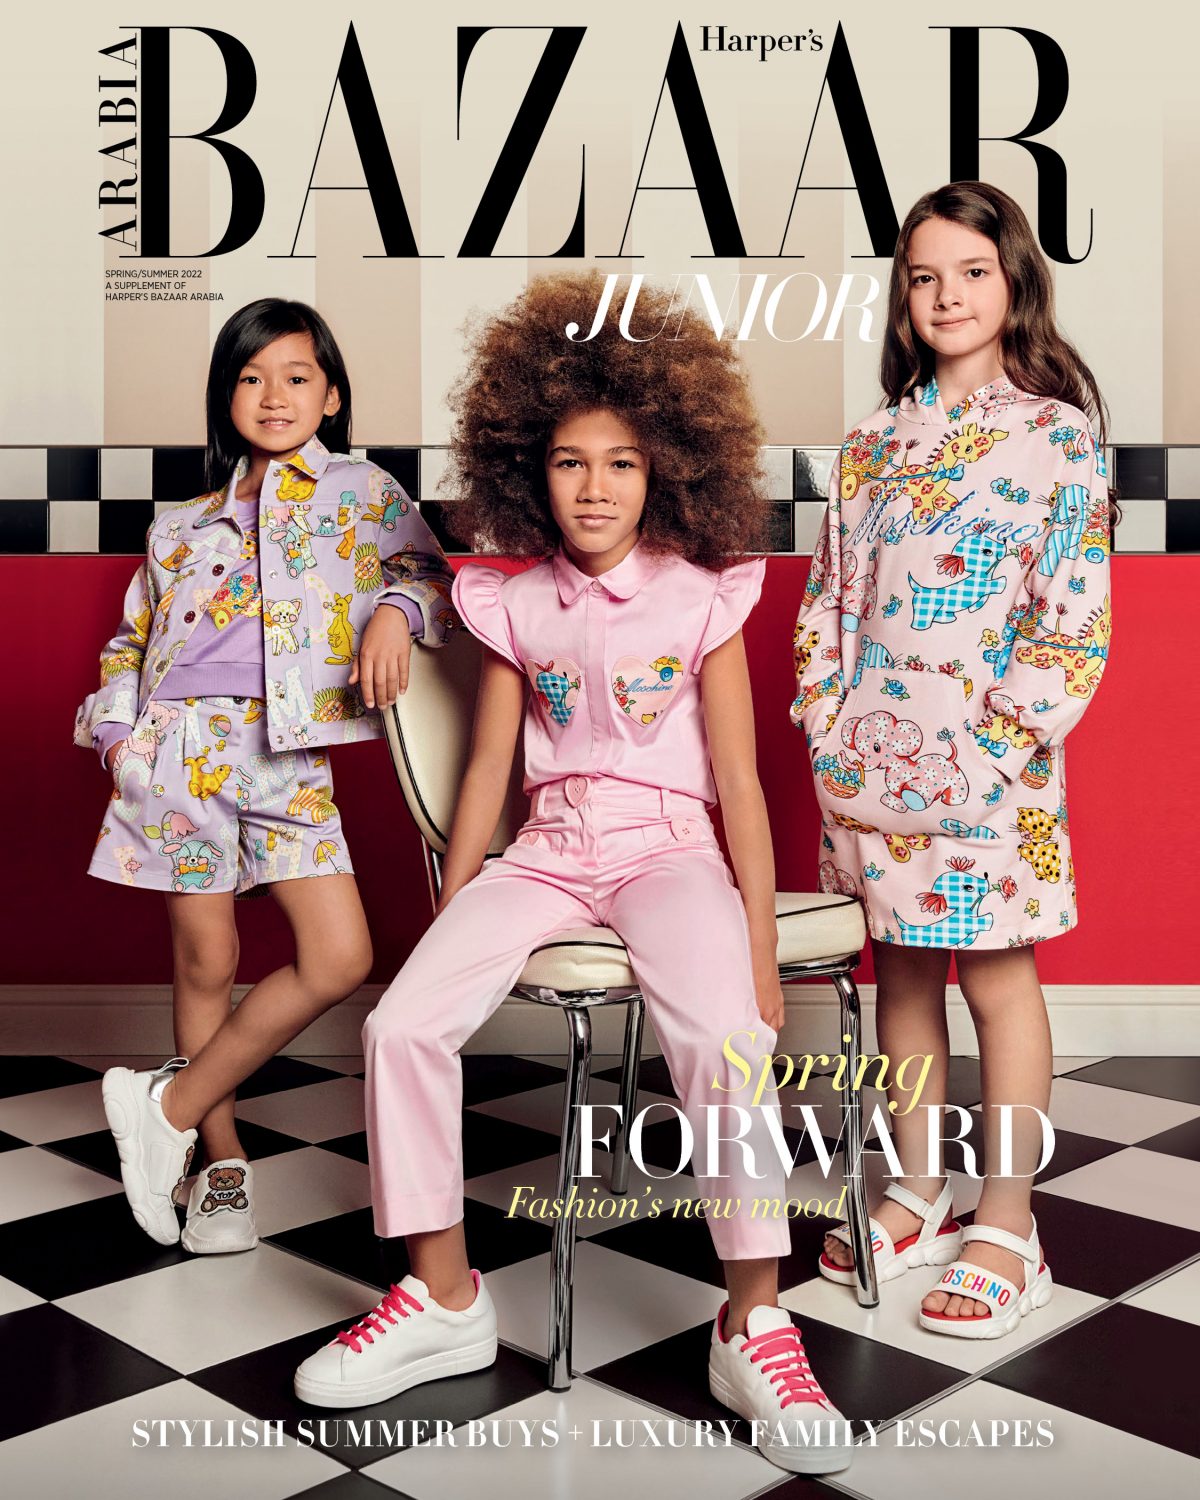 Introducing the Harper's Bazaar scholarship